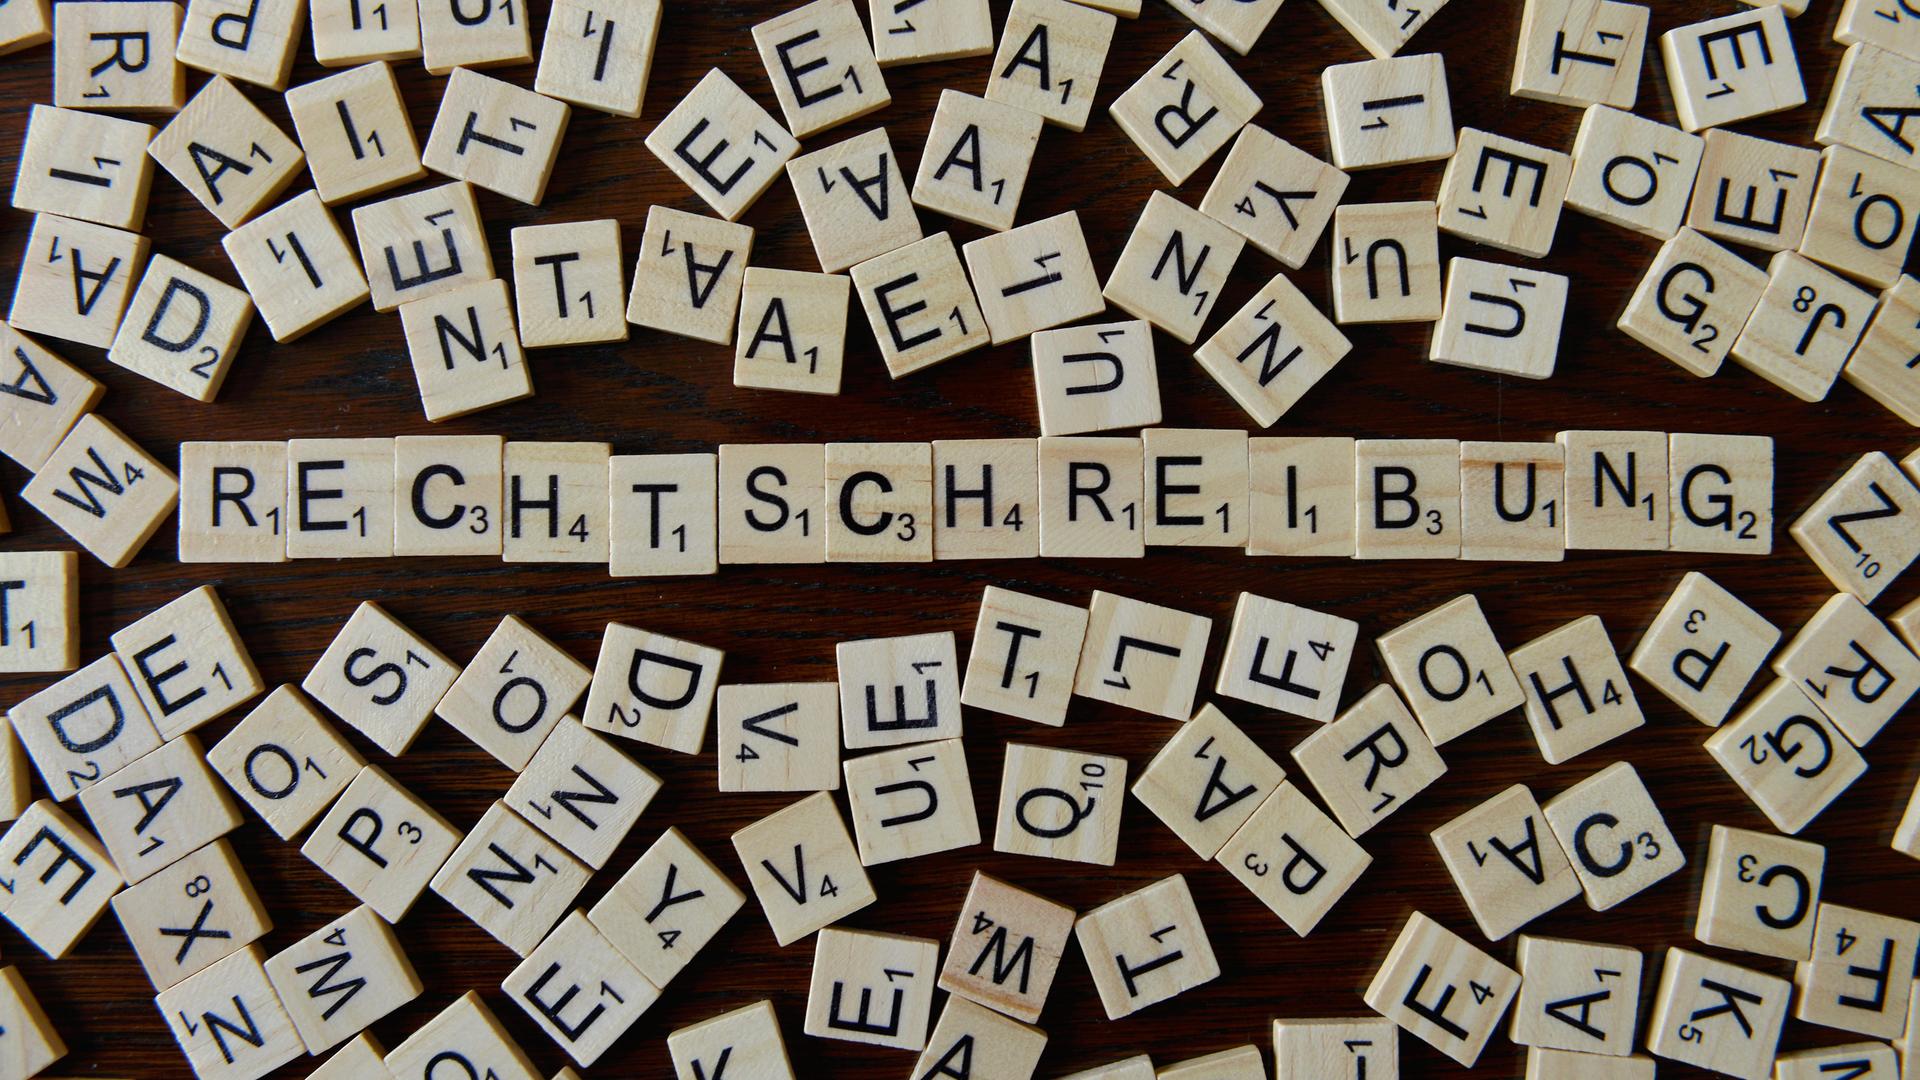 Würfel mit Buchstaben formen das Wort "Rechtschreibung"